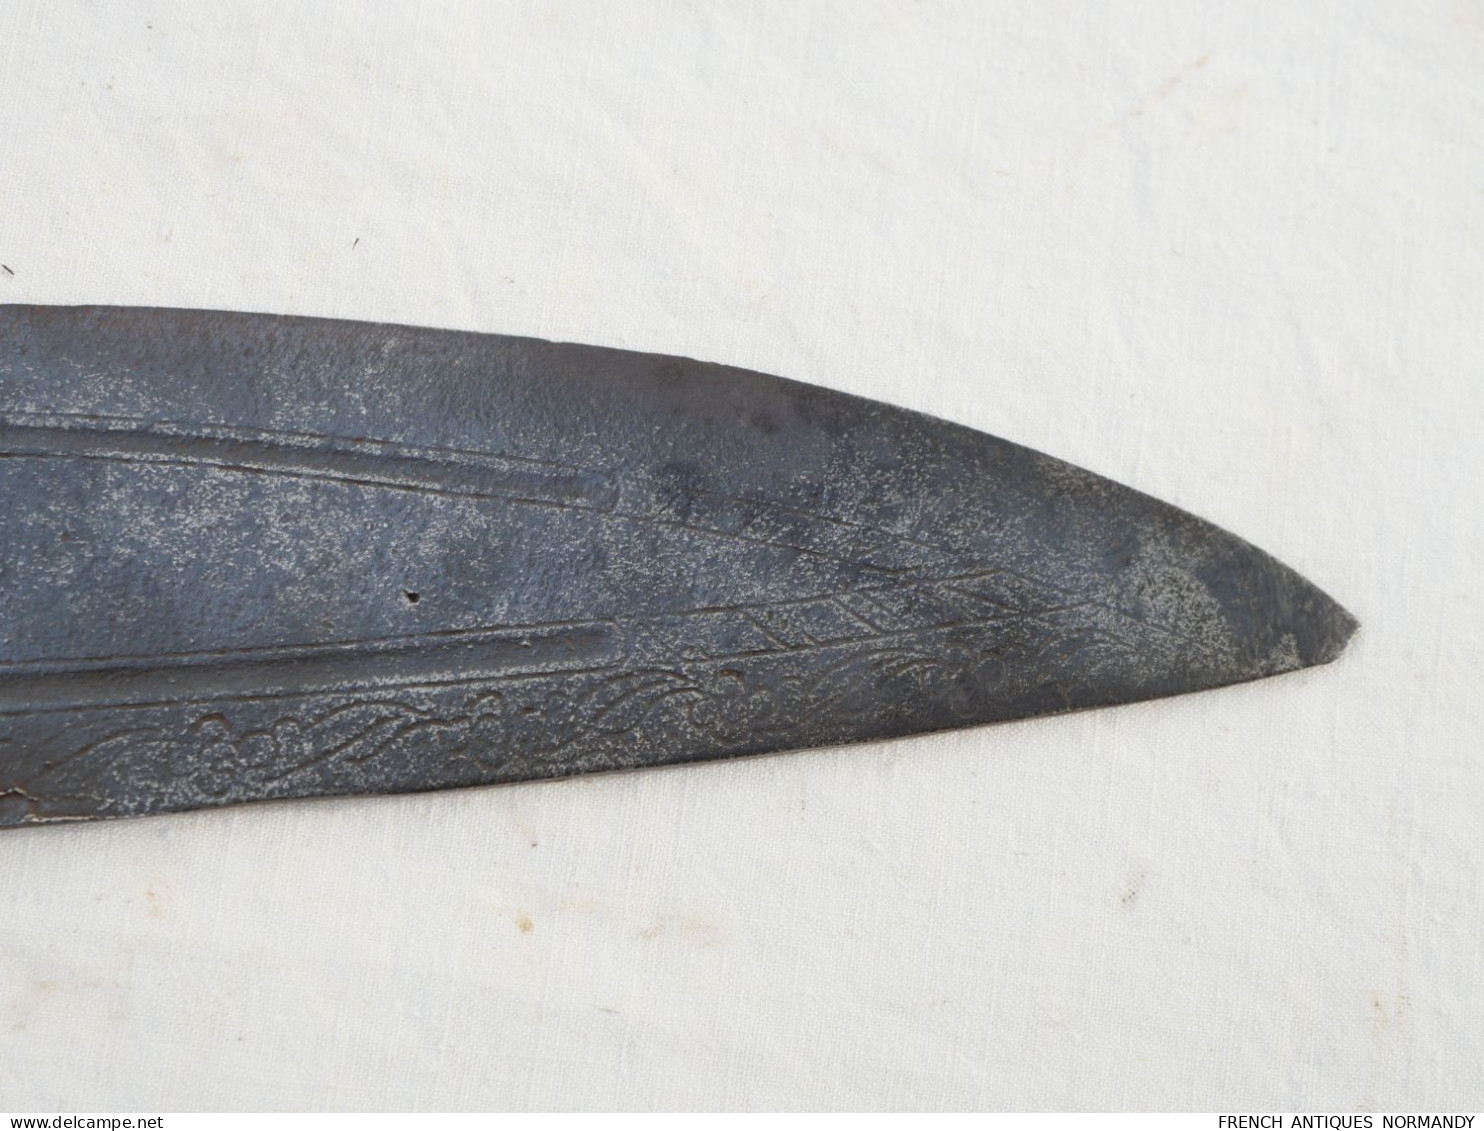 Arme antique - lourde dague ou épée courte en fonte de fer monobloc - origine et époque inconnues